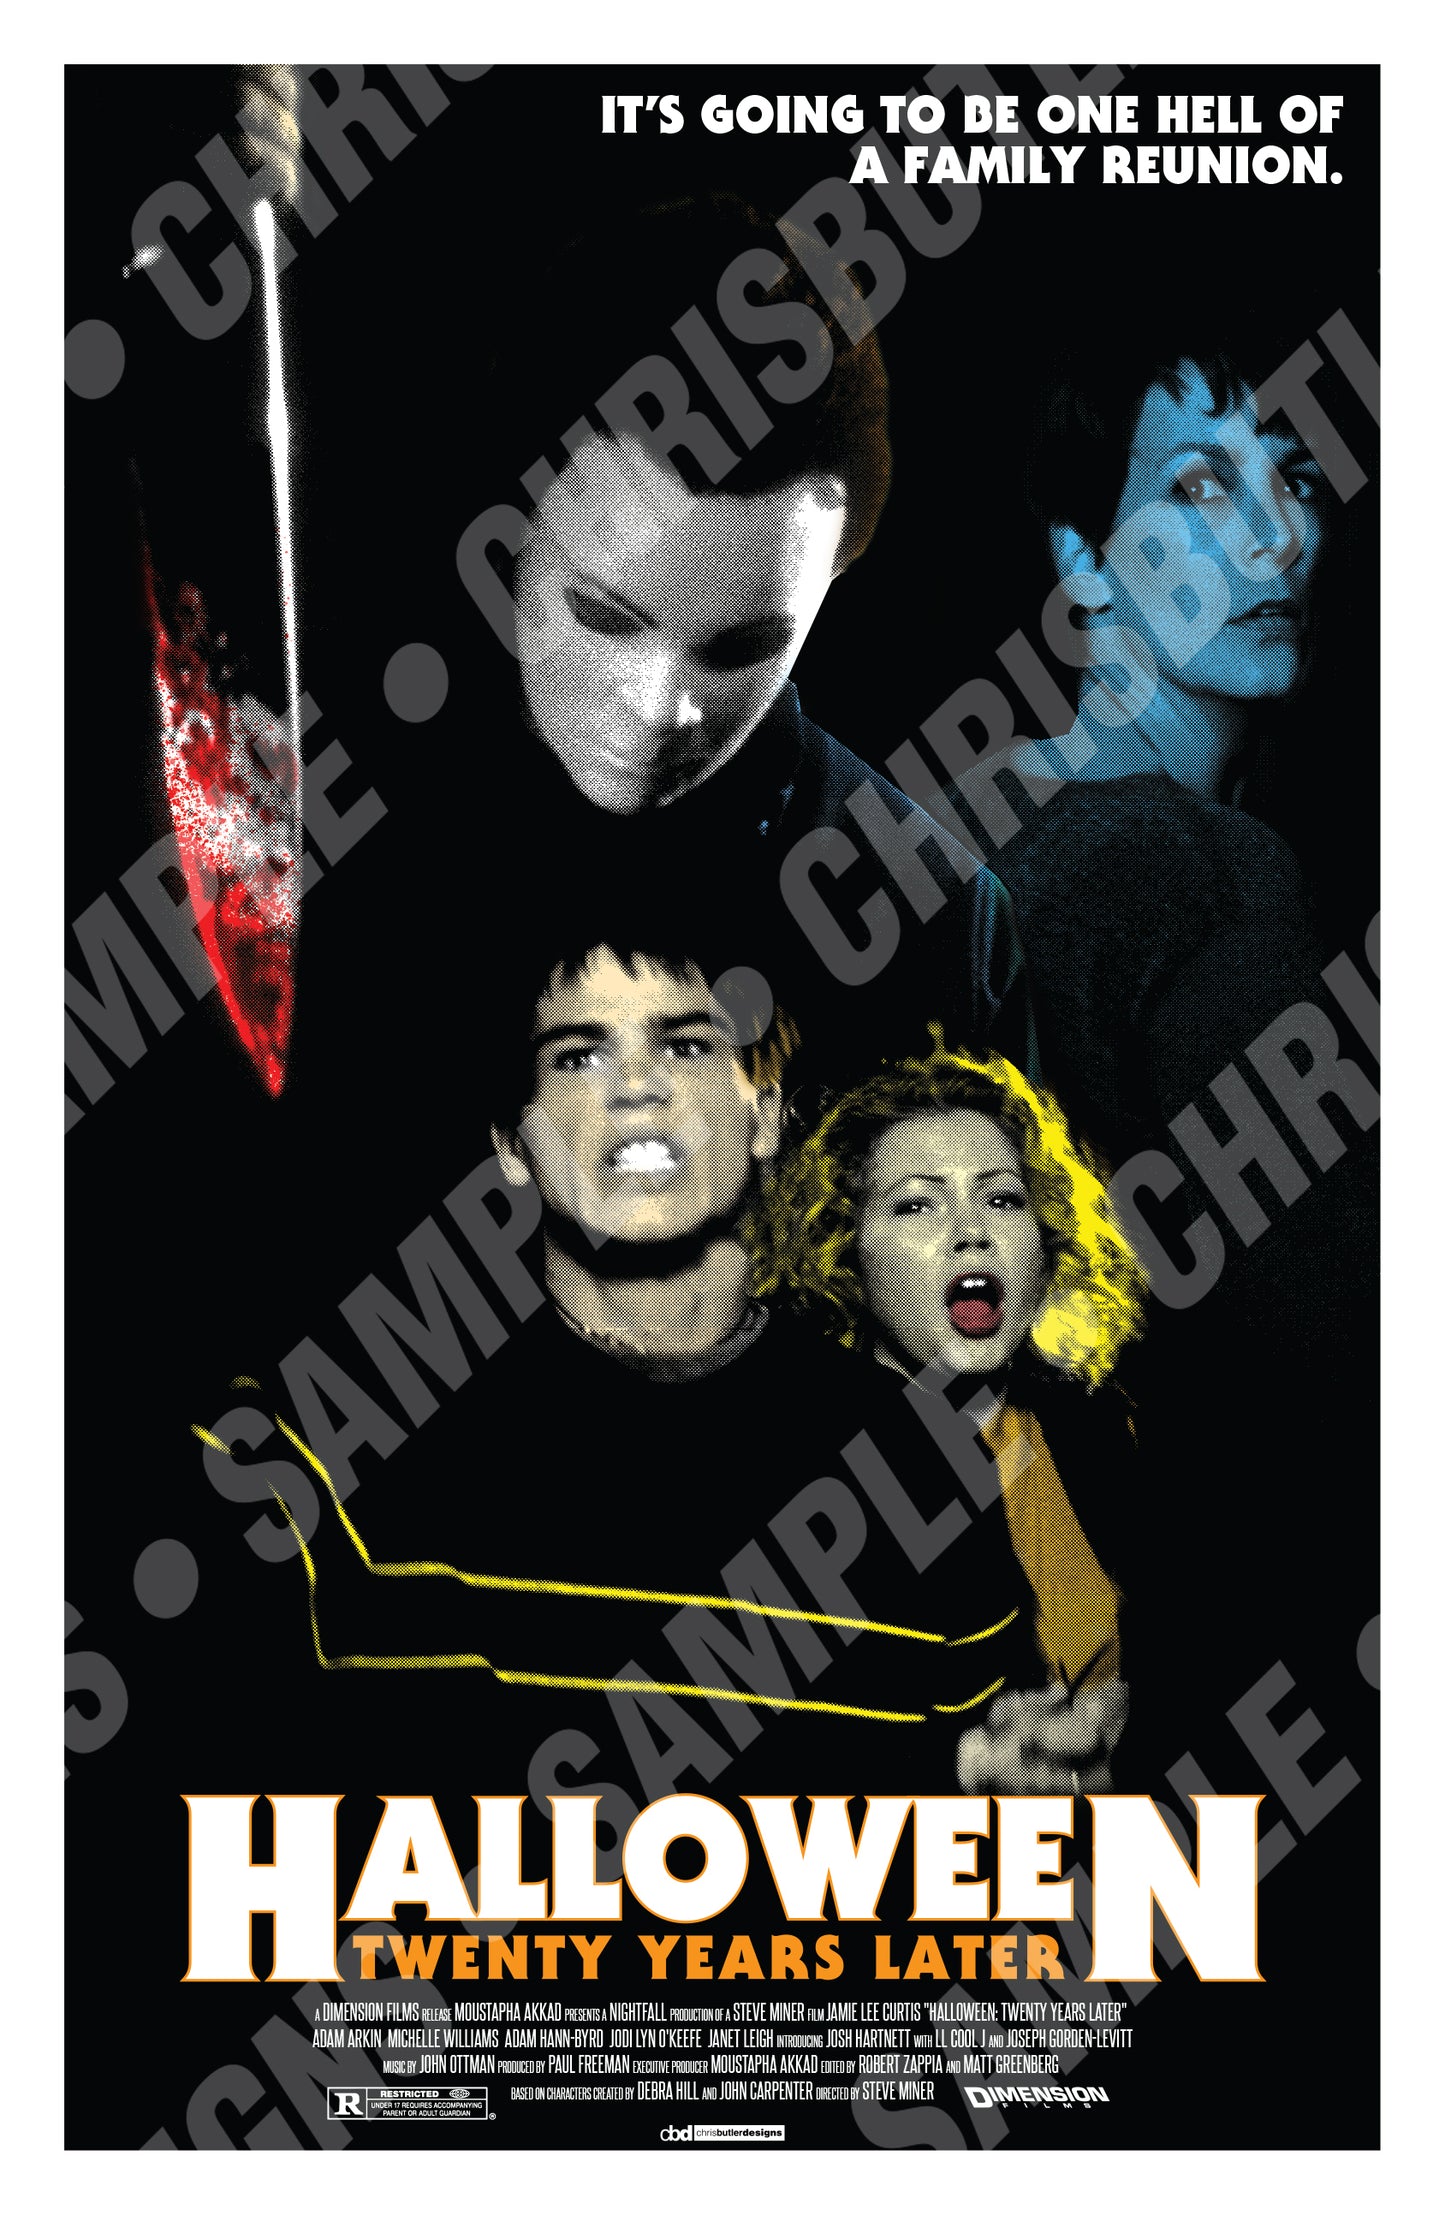 Halloween H20 11x17 Alternative Movie Poster